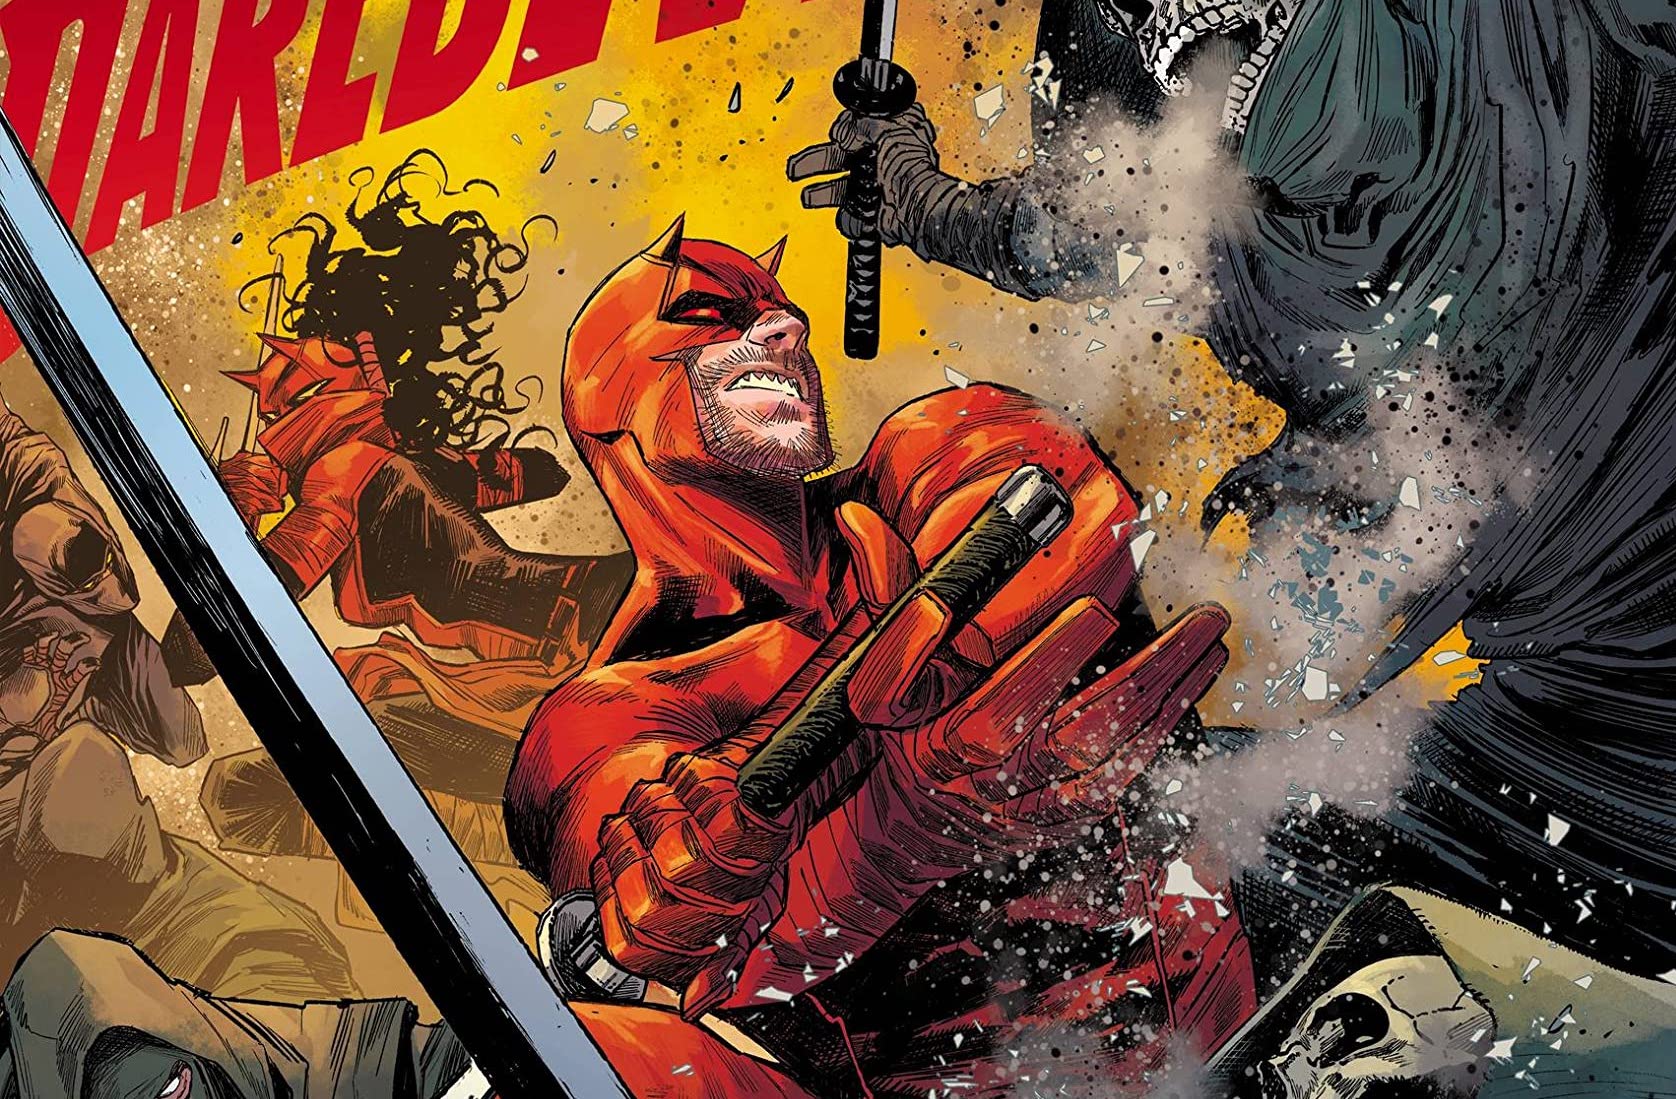 Daredevil & Elektra by Chip Zdarsky Vol. 1: The Red Fist Saga